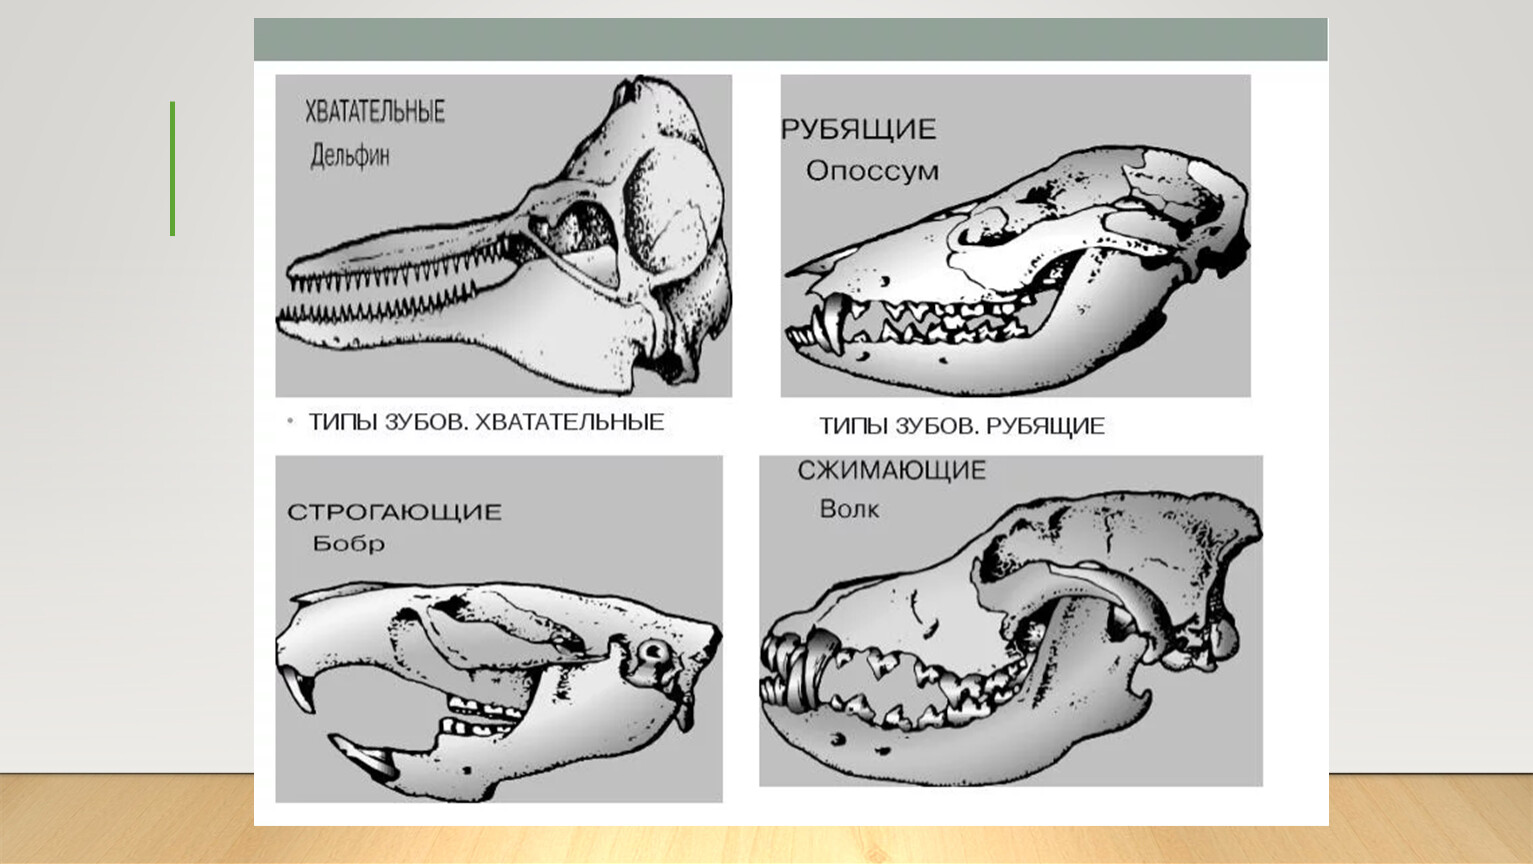 Рассмотрите строение зубов млекопитающих на какие. Зубная система млекопитающих анатомия. Строение зубов млекопитающих зубная система. Зубные системы животных разных отрядов млекопитающих. Зубная система насекомоядных млекопитающих.